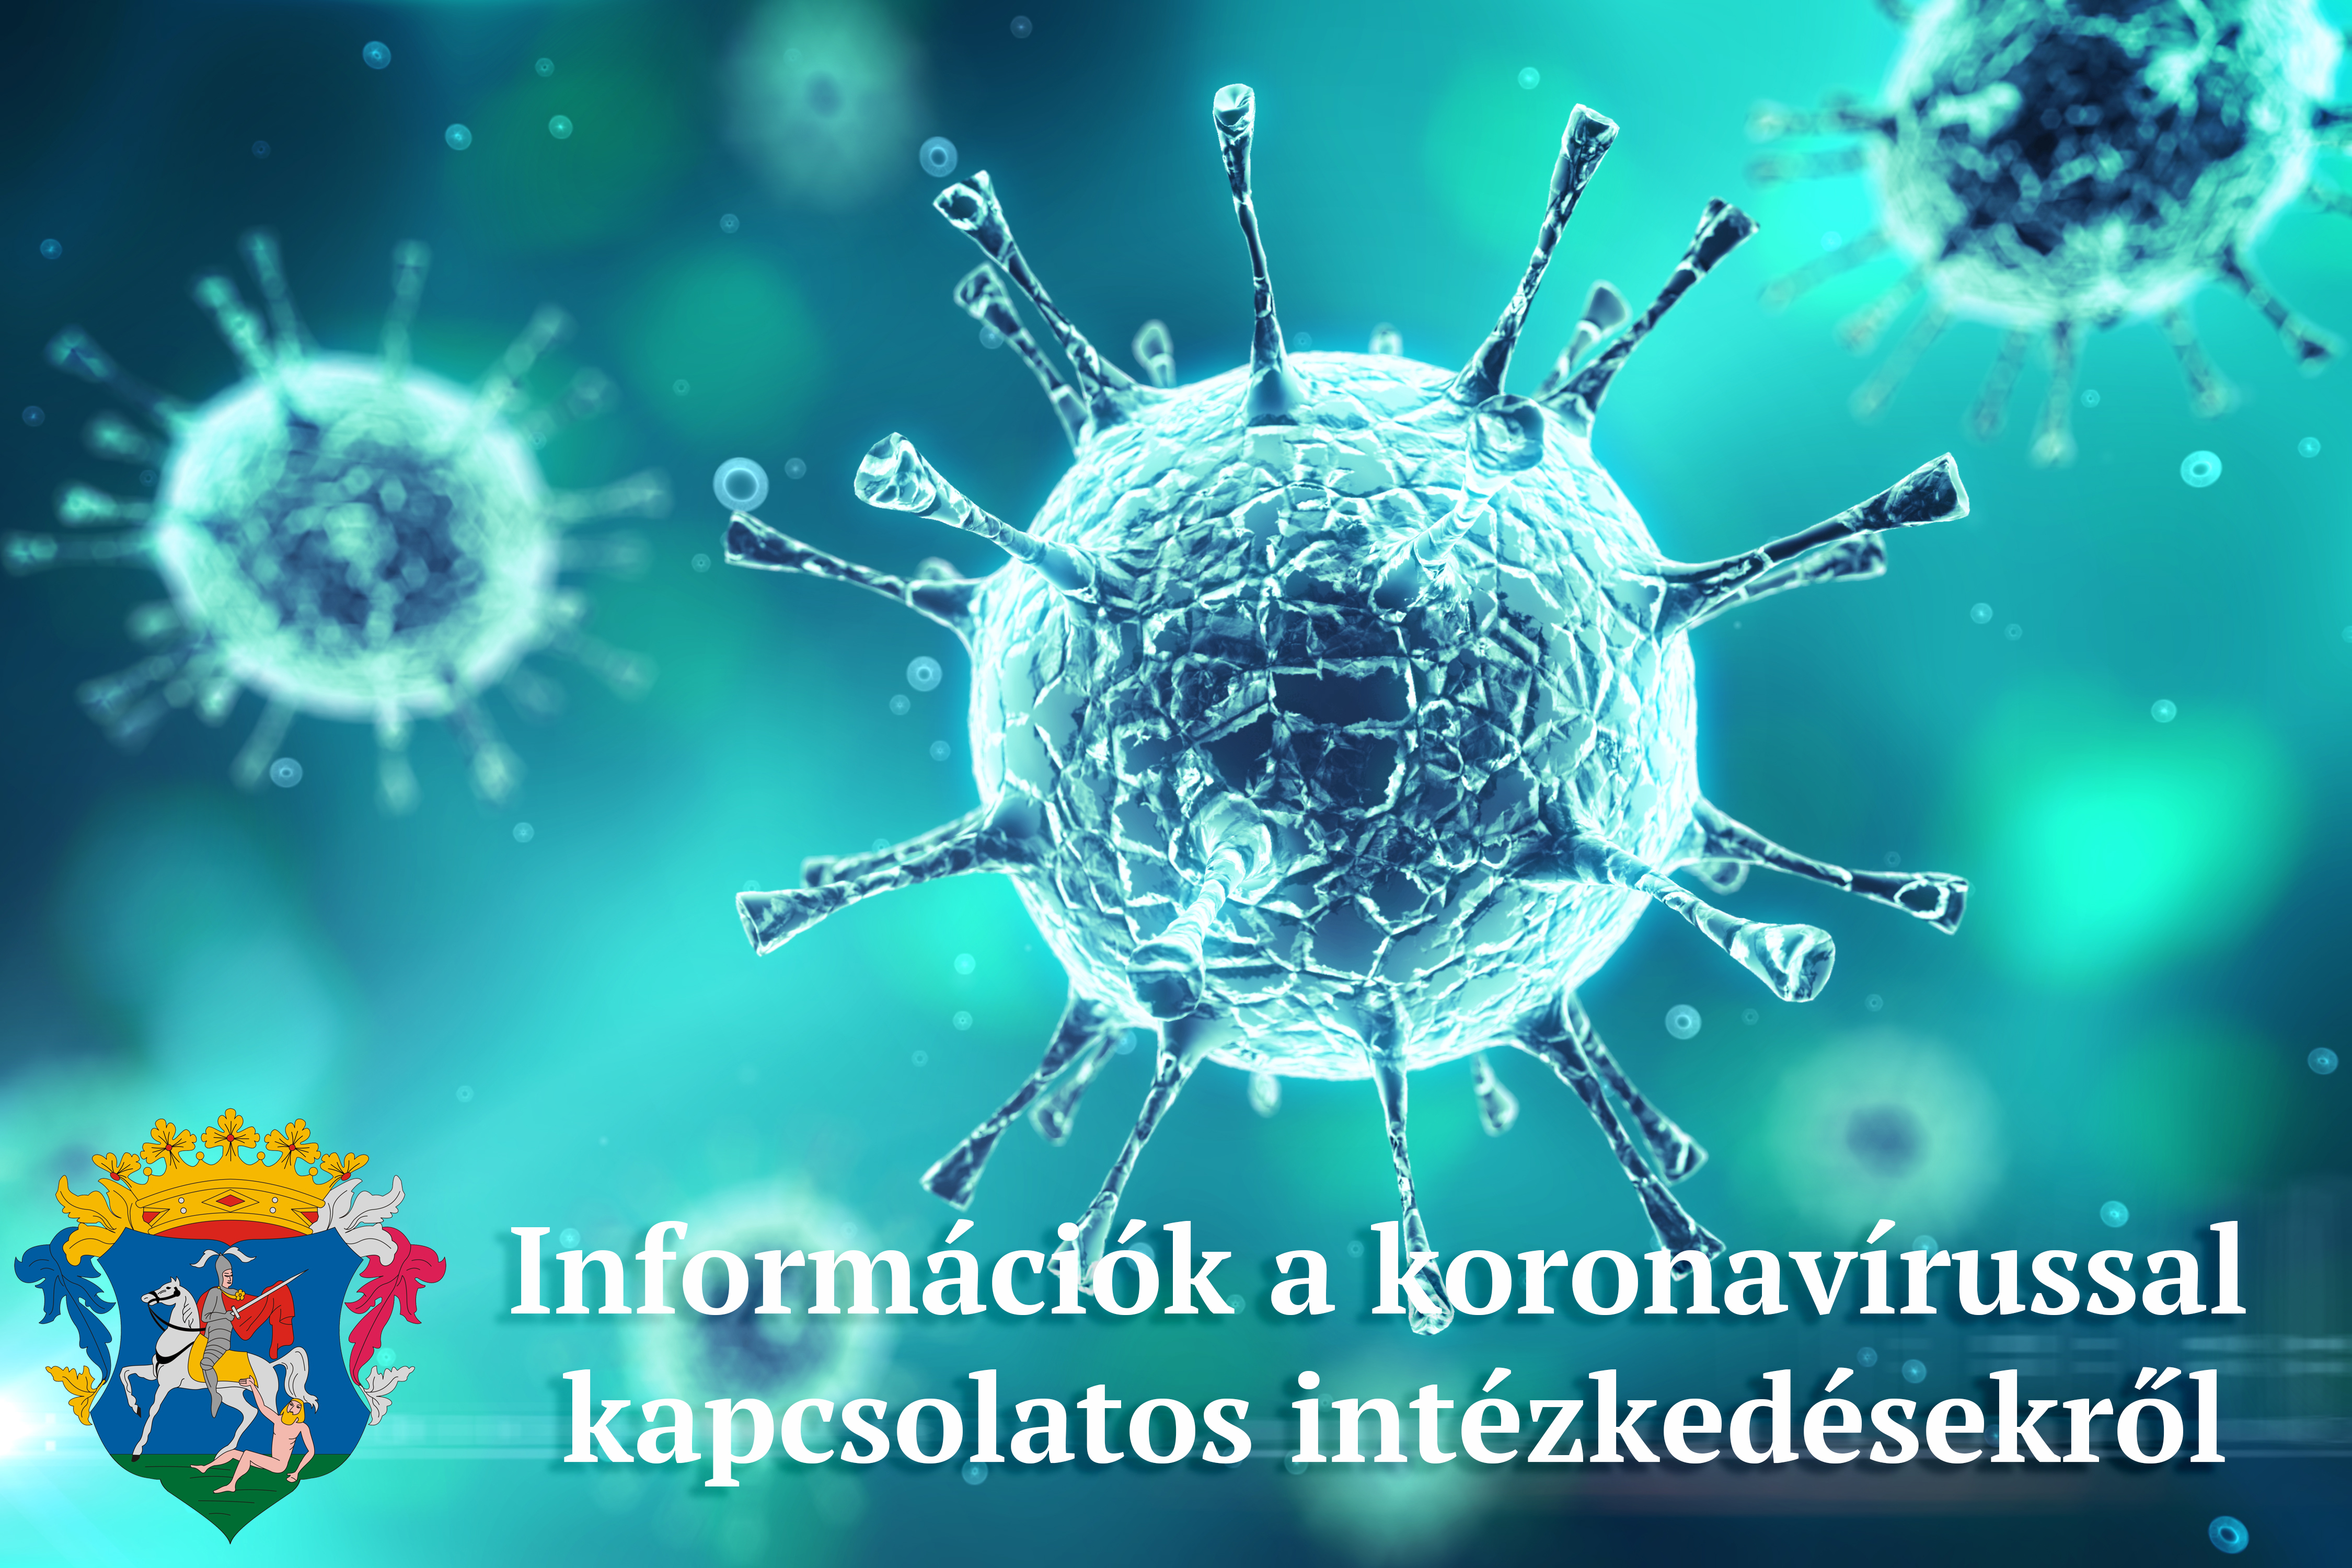 Koronavírussal kapcsolatos intézkedések, döntések 2021. május 31 és június 7 között